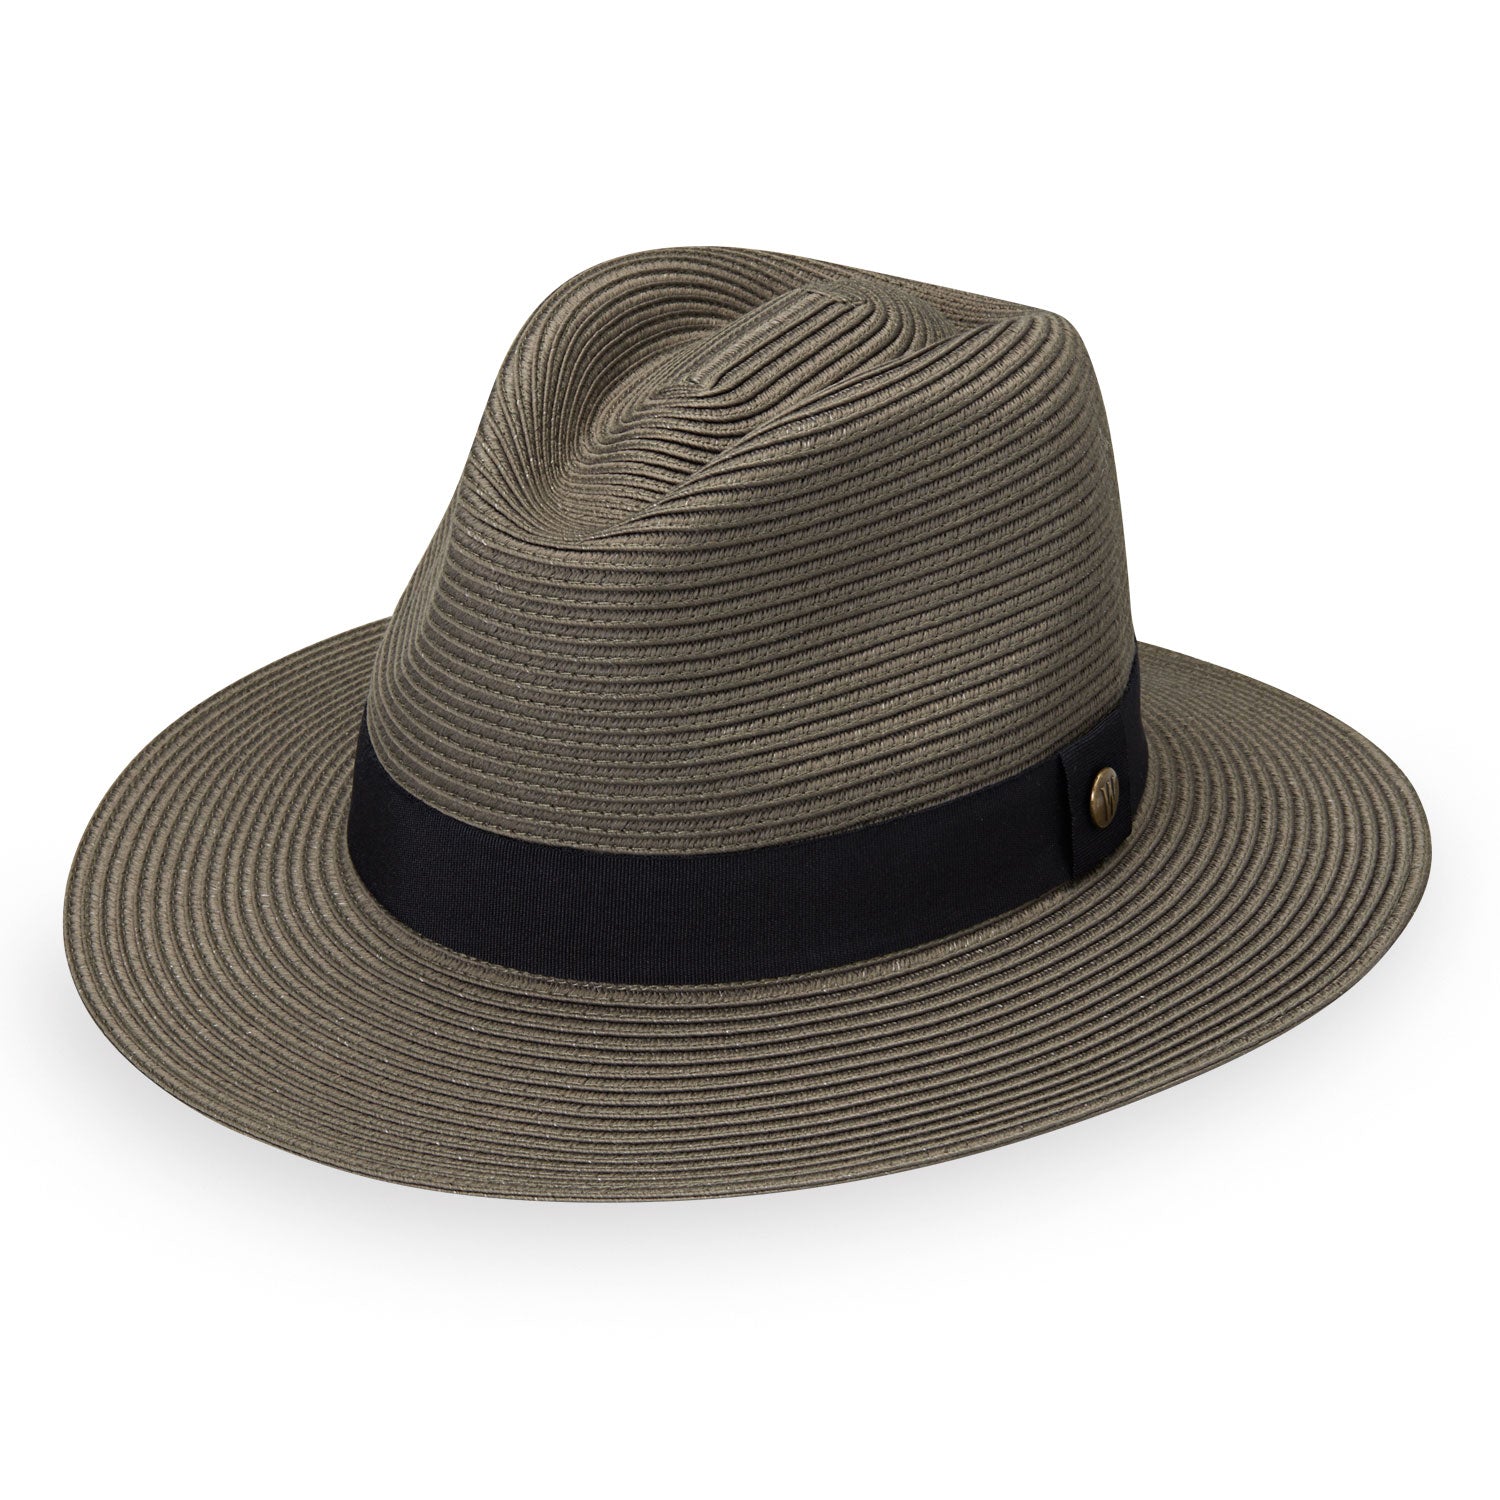 Men's UPF Bucket and Fedora Sun Hats - Wallaroo Hat Company